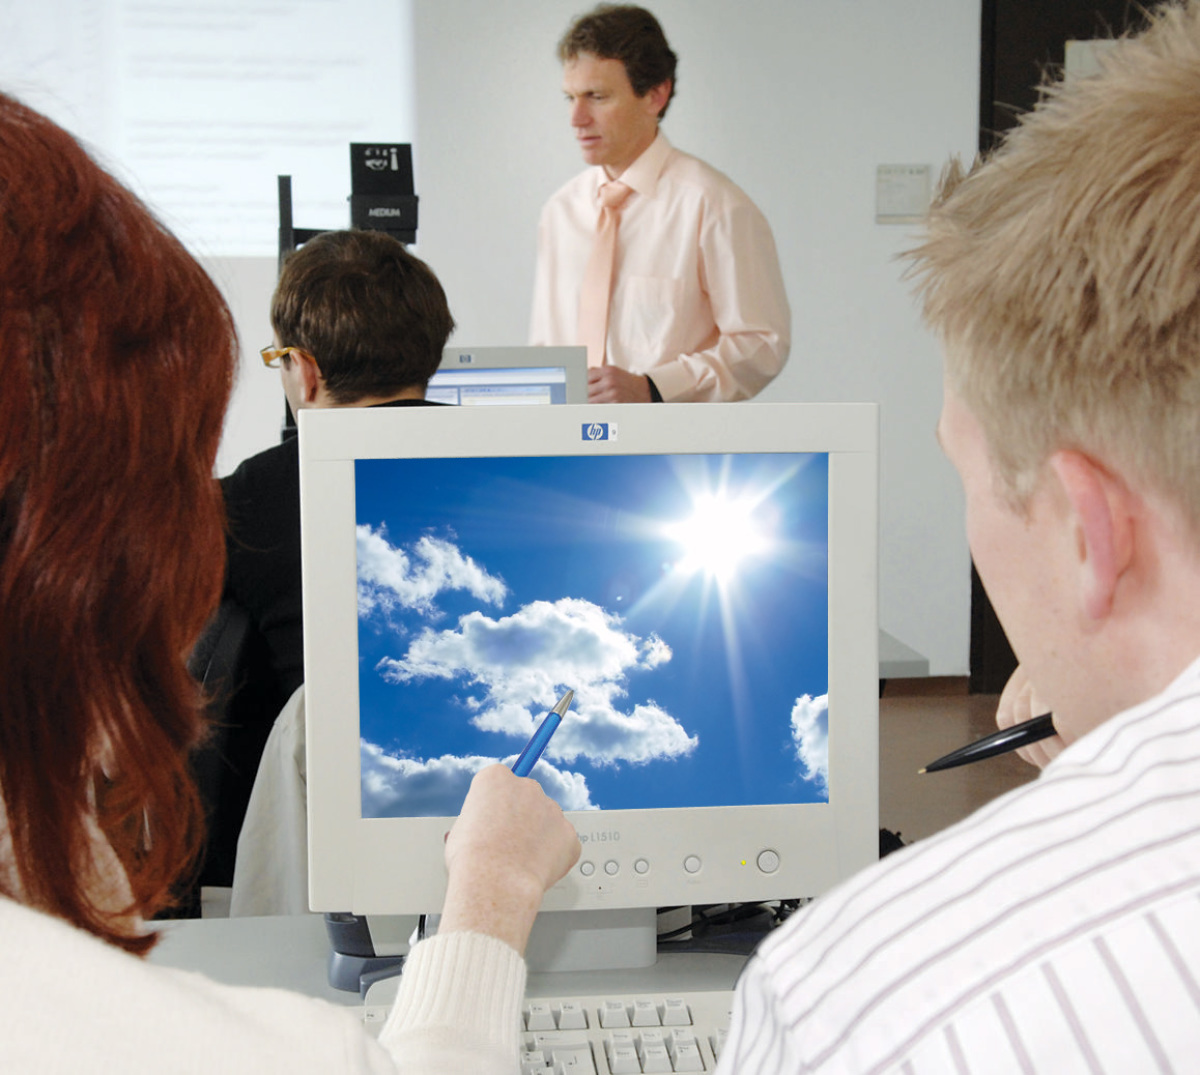 Zu sehen ist eine blonde Frau von hinten, die einem dunkelhaarigen Mann mit einem Stift etwas auf dem Bildschirm vor ihnen zeigt. Der Bildschirm ist mit dem die UDE repräsentierenden Wolkenmotiv ausgefüllt.